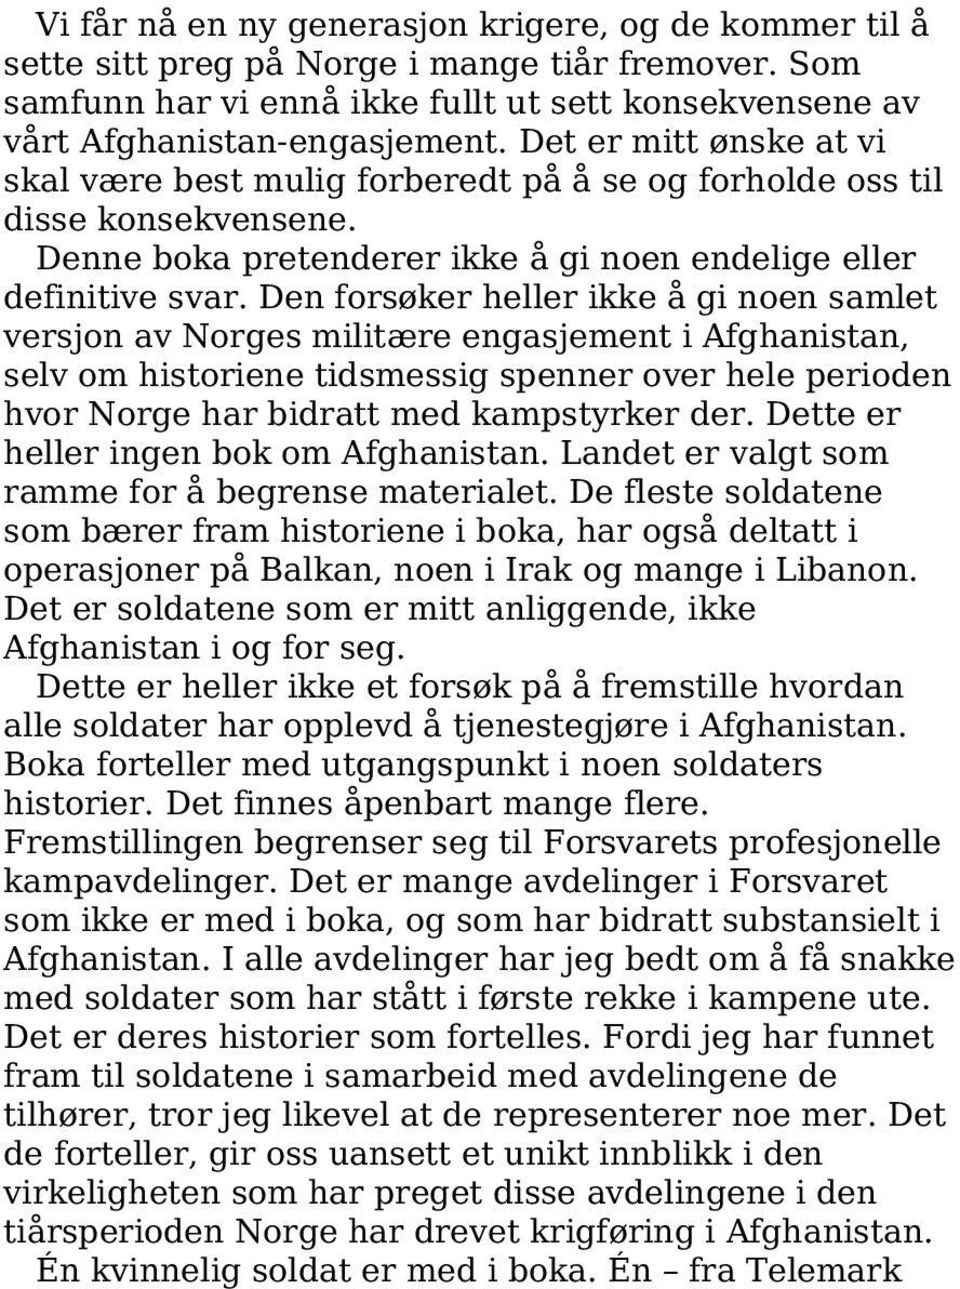 Den forsøker heller ikke å gi noen samlet versjon av Norges militære engasjement i Afghanistan, selv om historiene tidsmessig spenner over hele perioden hvor Norge har bidratt med kampstyrker der.